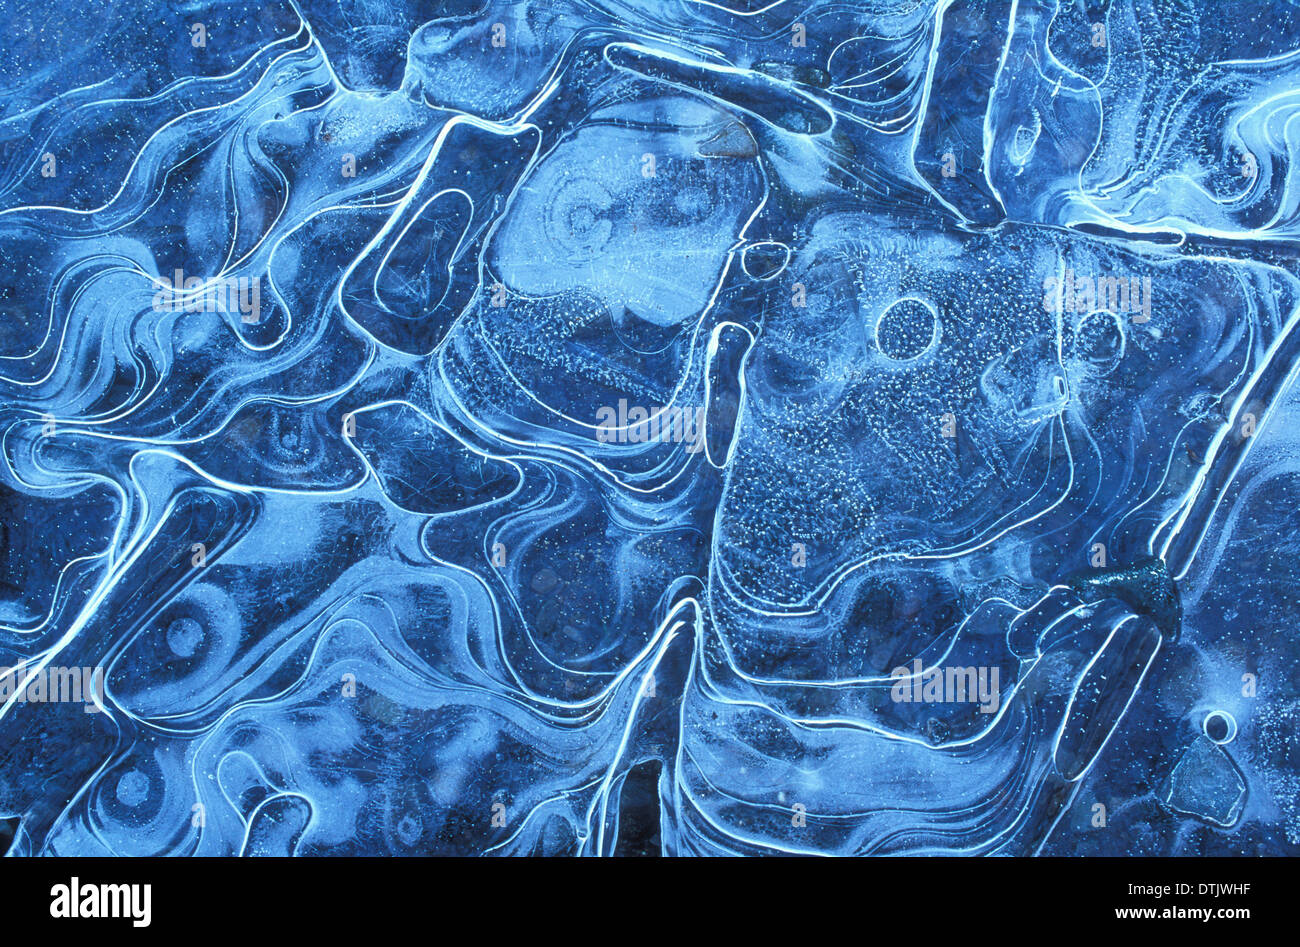 Motifs de glace dans la glace de surface gelée d'un lac gelé Banque D'Images